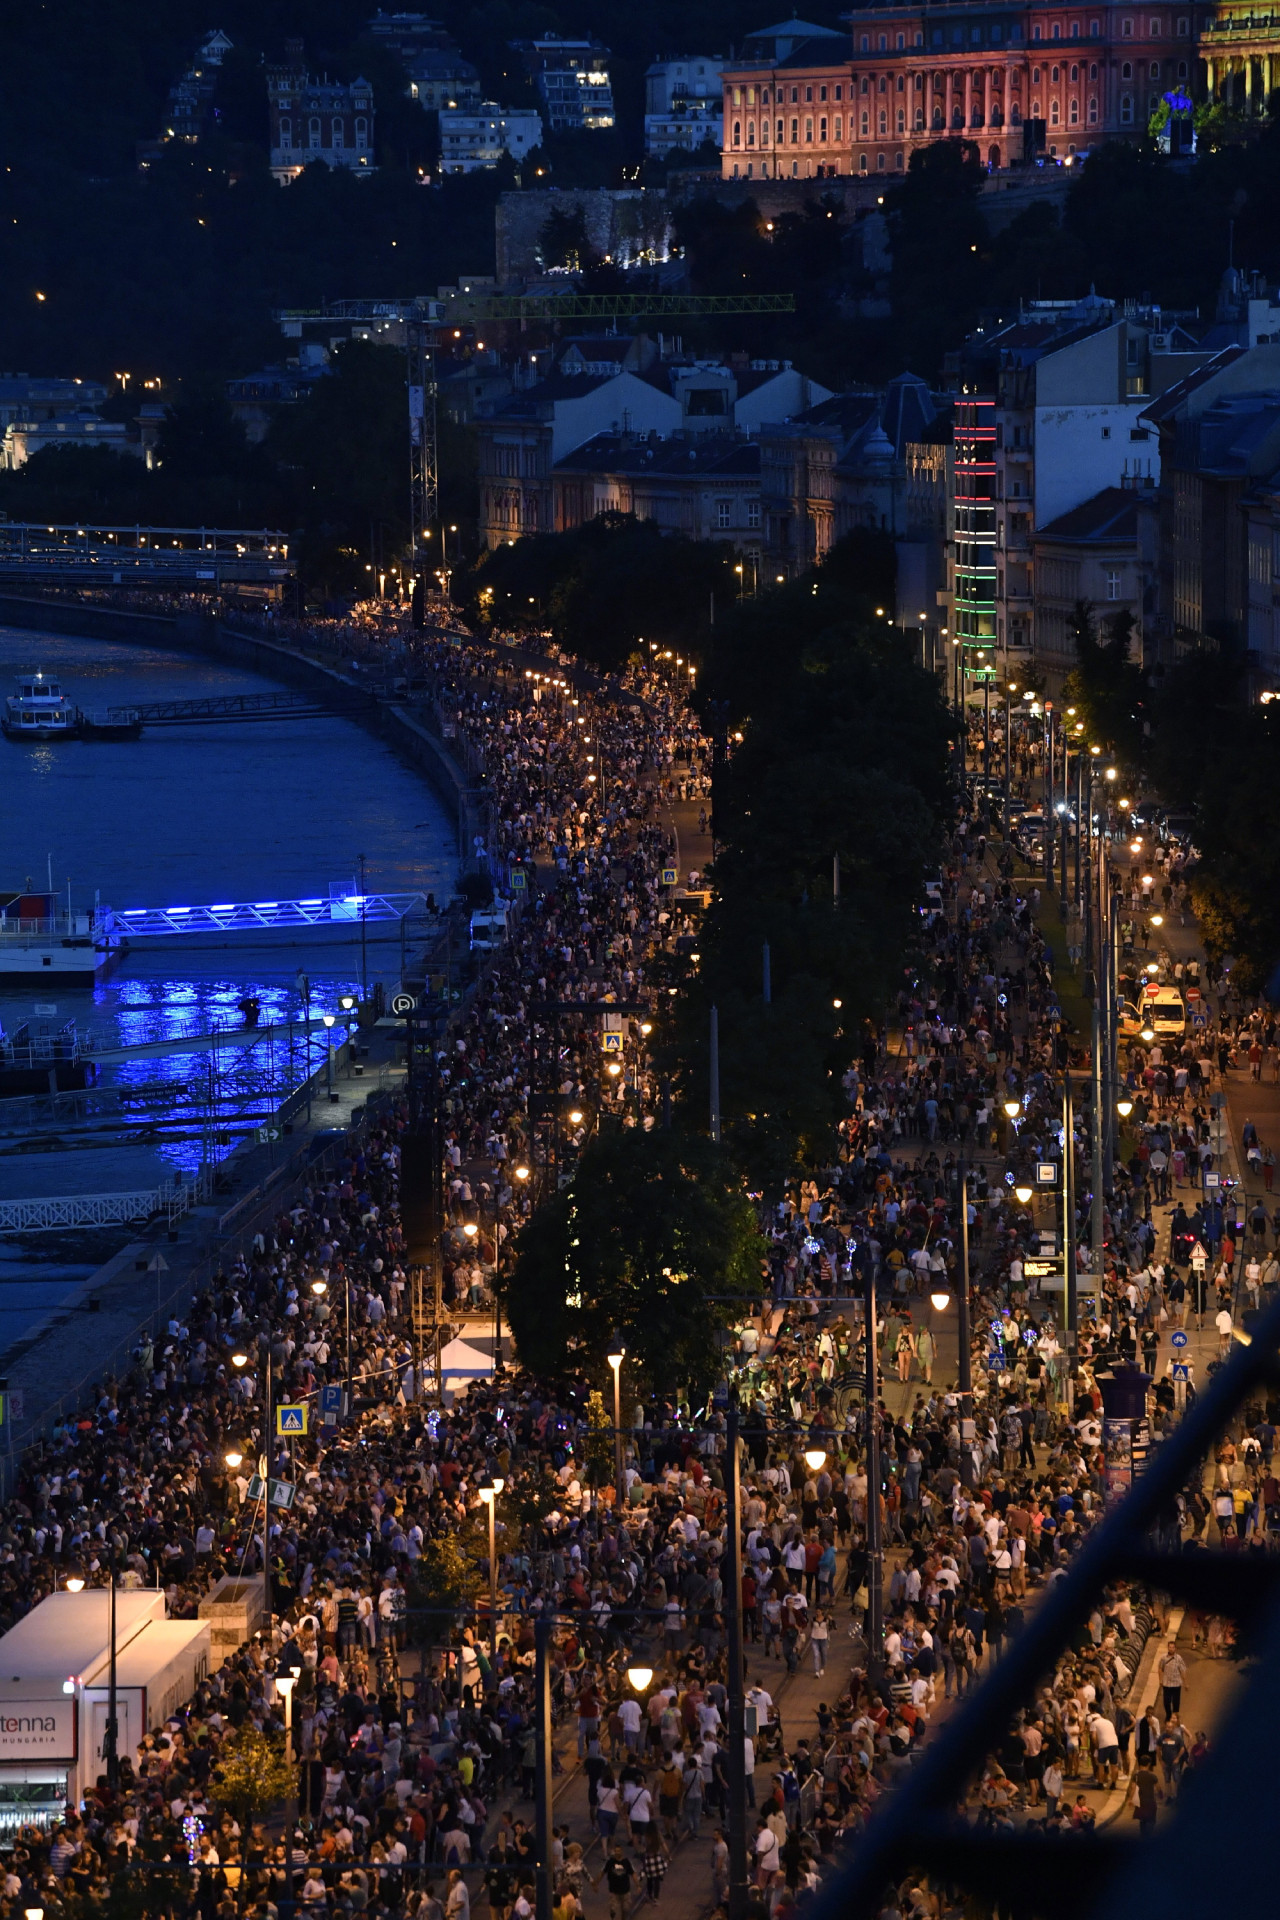 Nézők gyülekeznek a budai rakparton az ünnepi tűzijáték előtt az államalapítás ünnepén, Szent István napján 2021. augusztus 20-án. MTI/Máthé Zoltán